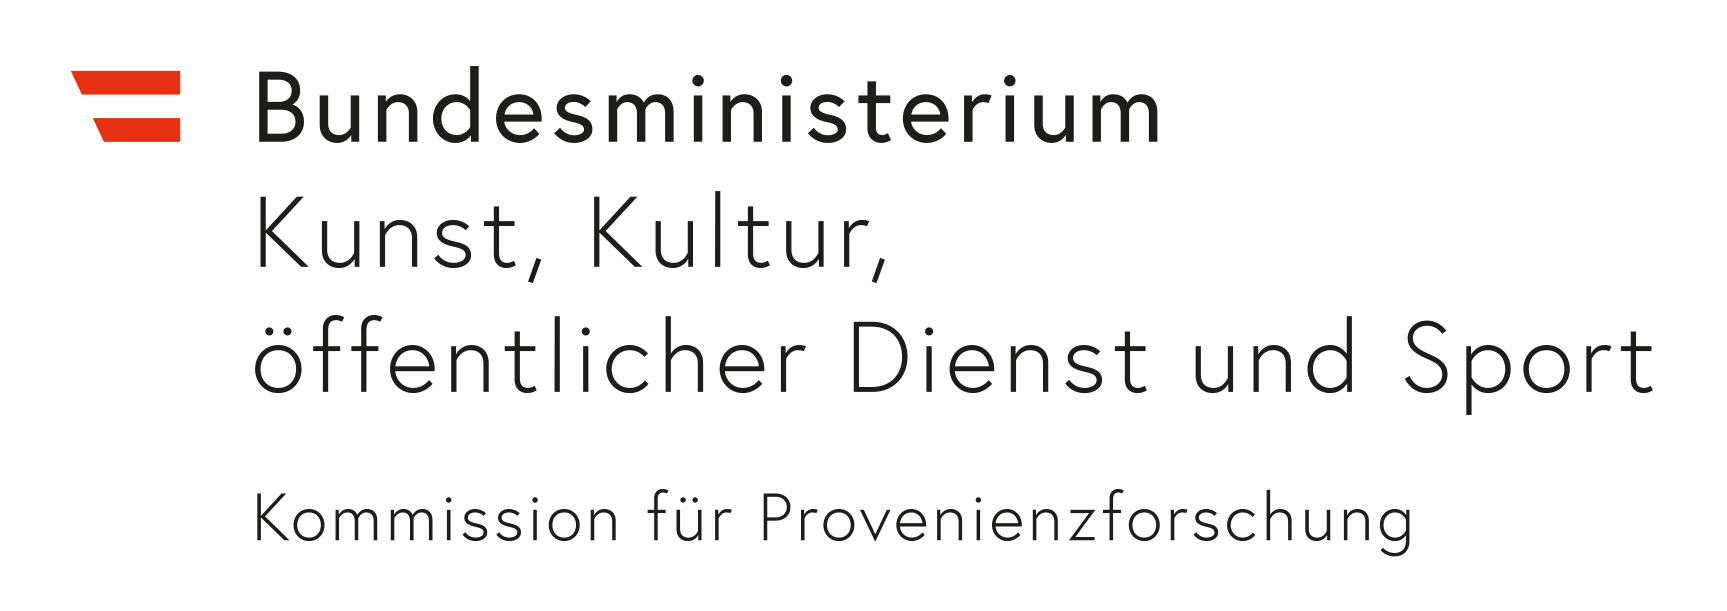 Logo Kommission für Provenienzforschung im Bundesministerium für Kunst, Kultur, öffentlicher Dienst und Sport